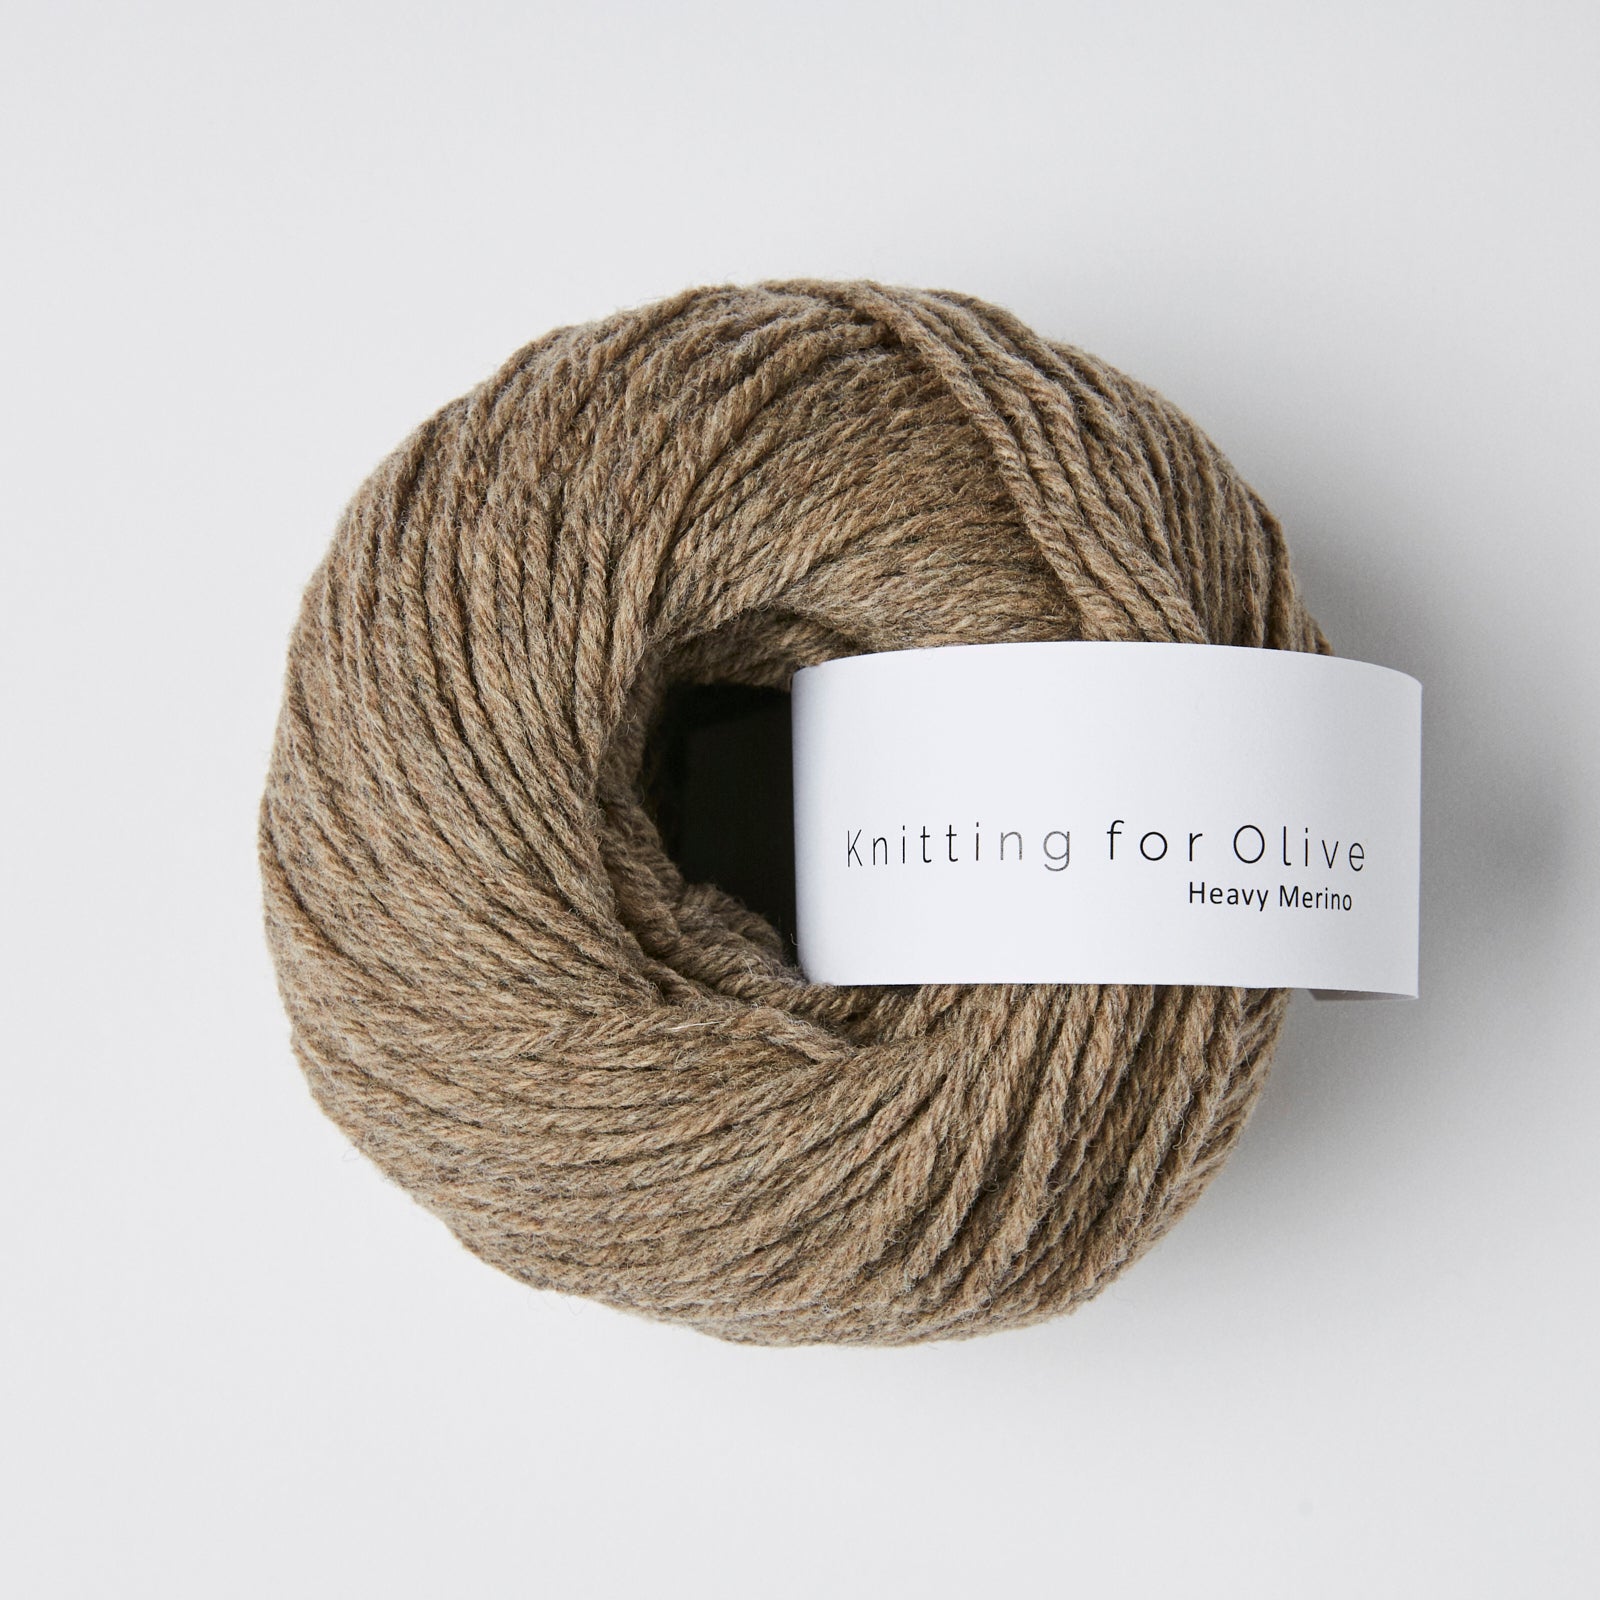 Knitting for Olive HEAVY Merino - Soil